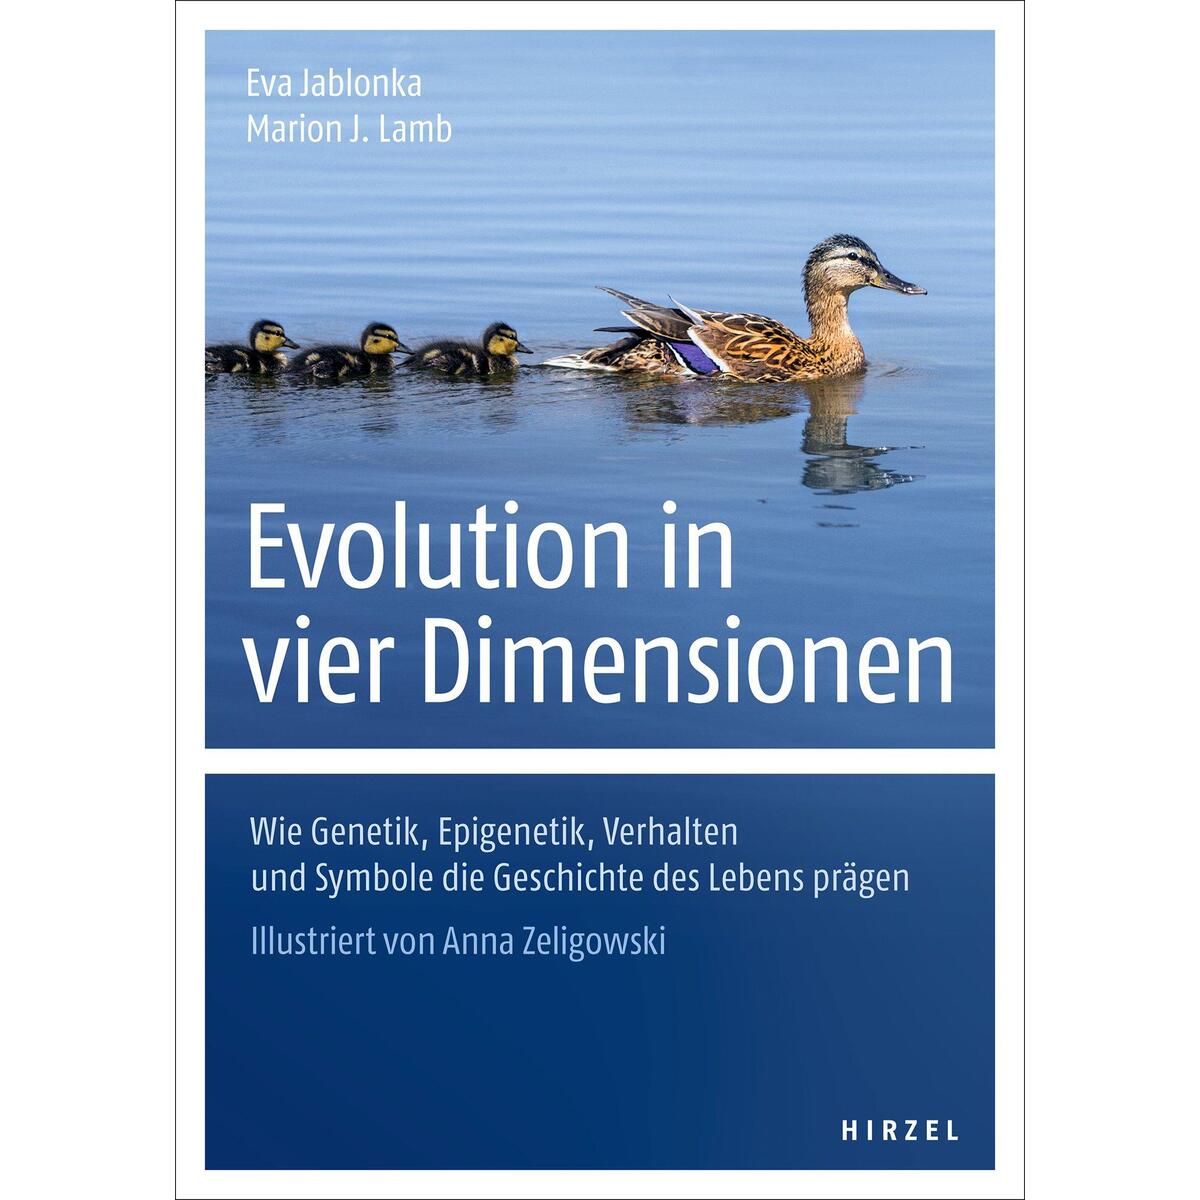 Evolution in vier Dimensionen von Hirzel S. Verlag